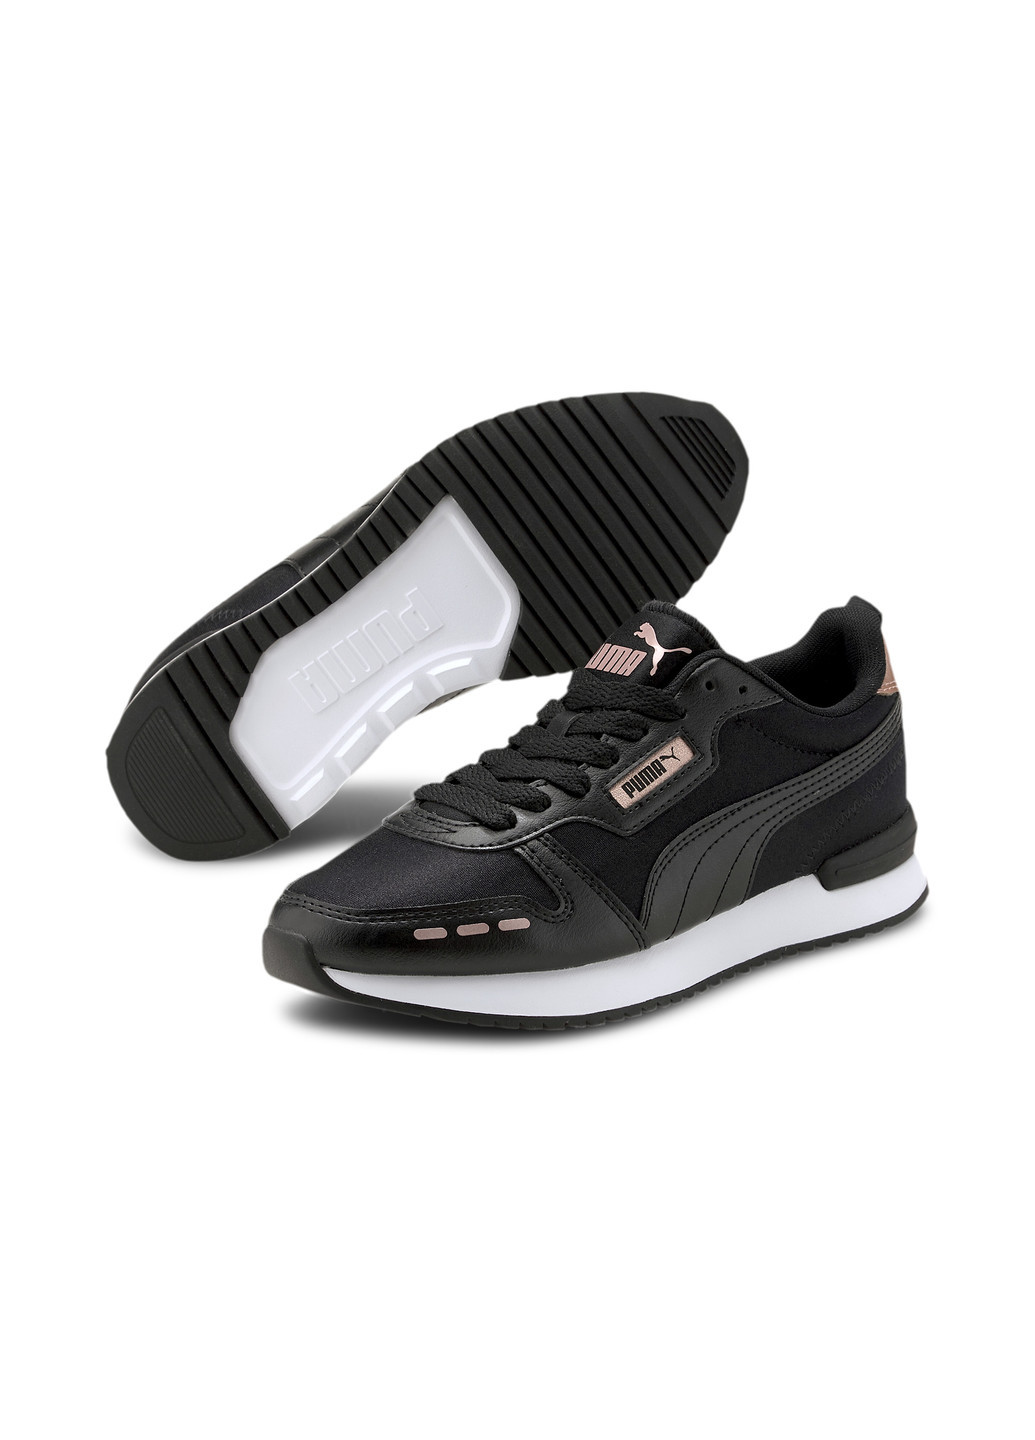 Черные всесезонные кроссовки r78 metallic women's trainers Puma